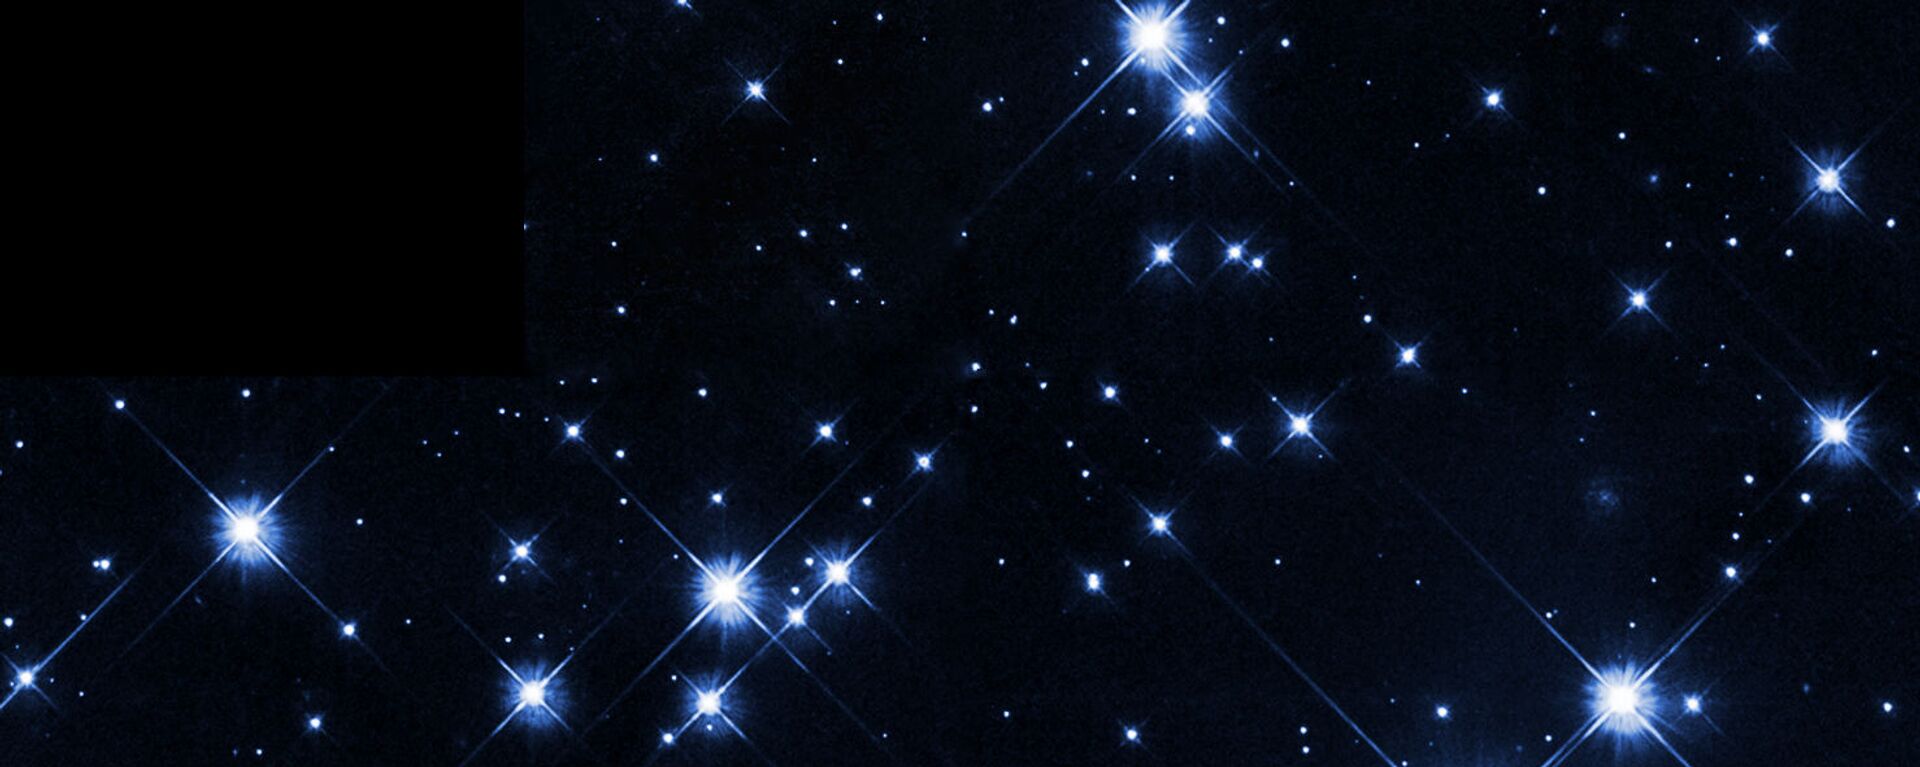 Hubble tarafından çekilen uzay görüntüleri - Sputnik Türkiye, 1920, 17.09.2021